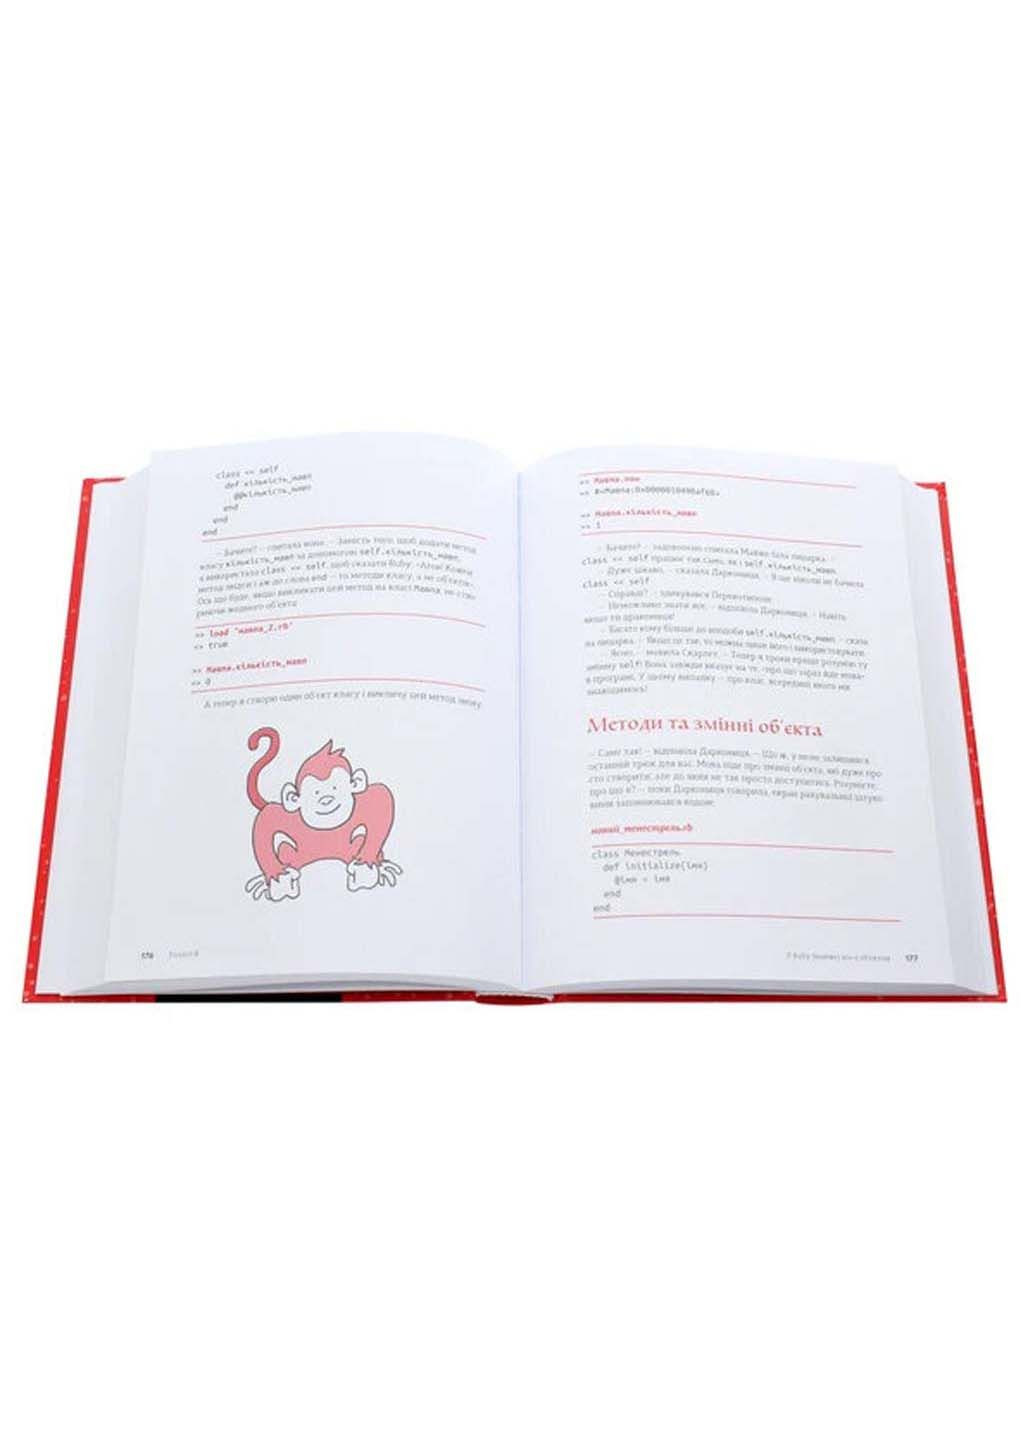 Книга "Ruby" для детей. Магическое вступление в программирование 2020г 392 с Видавництво Старого Лева (293060176)